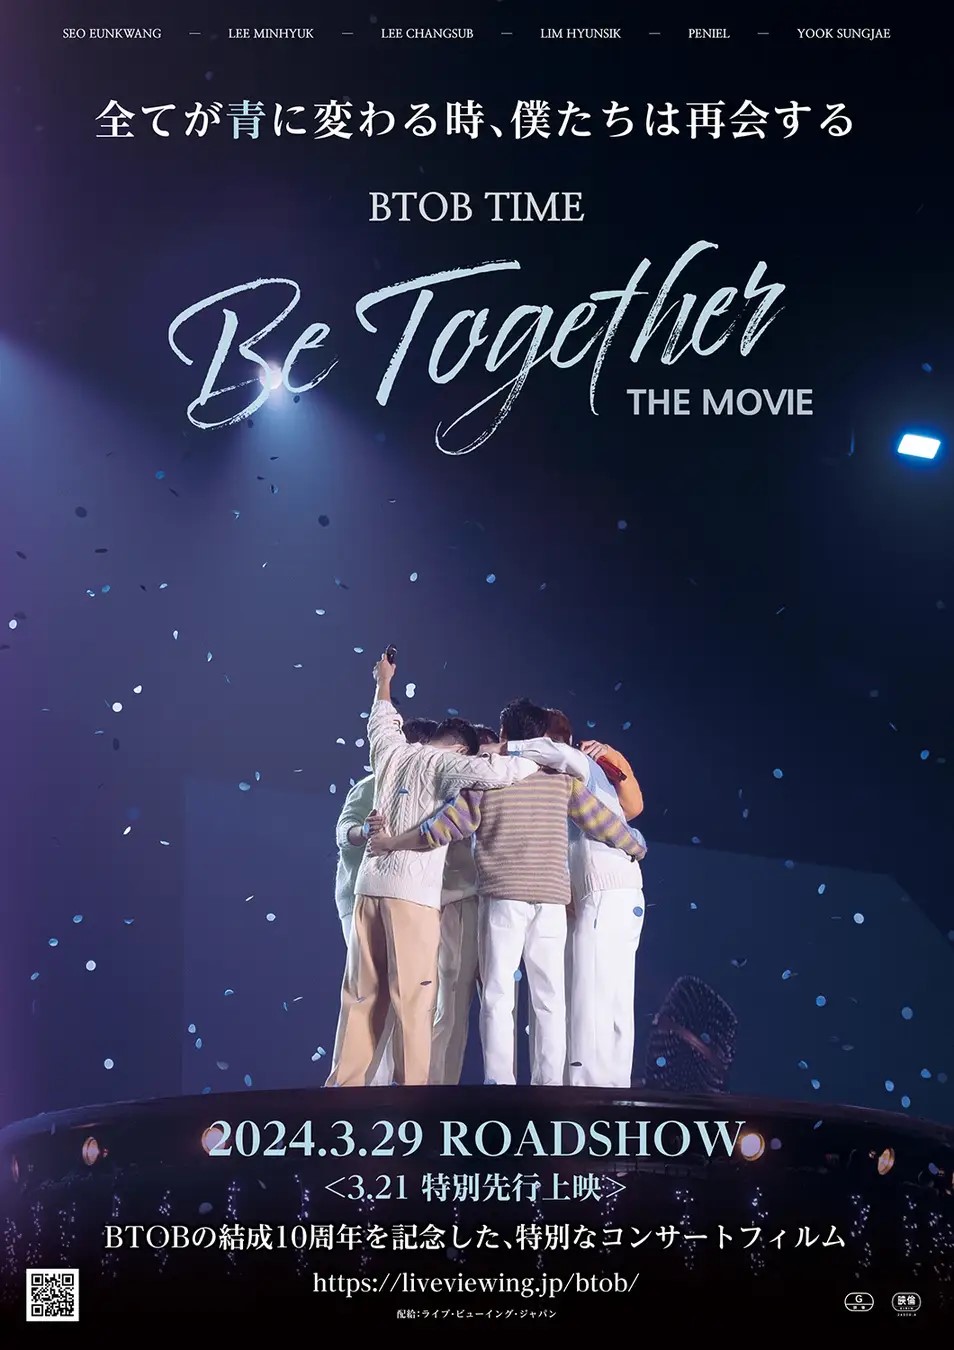 BTOB10周年コンサートフィルム、3月29日から劇場公開決定!歌ってもOKの応援上映も日・月・水曜に実施